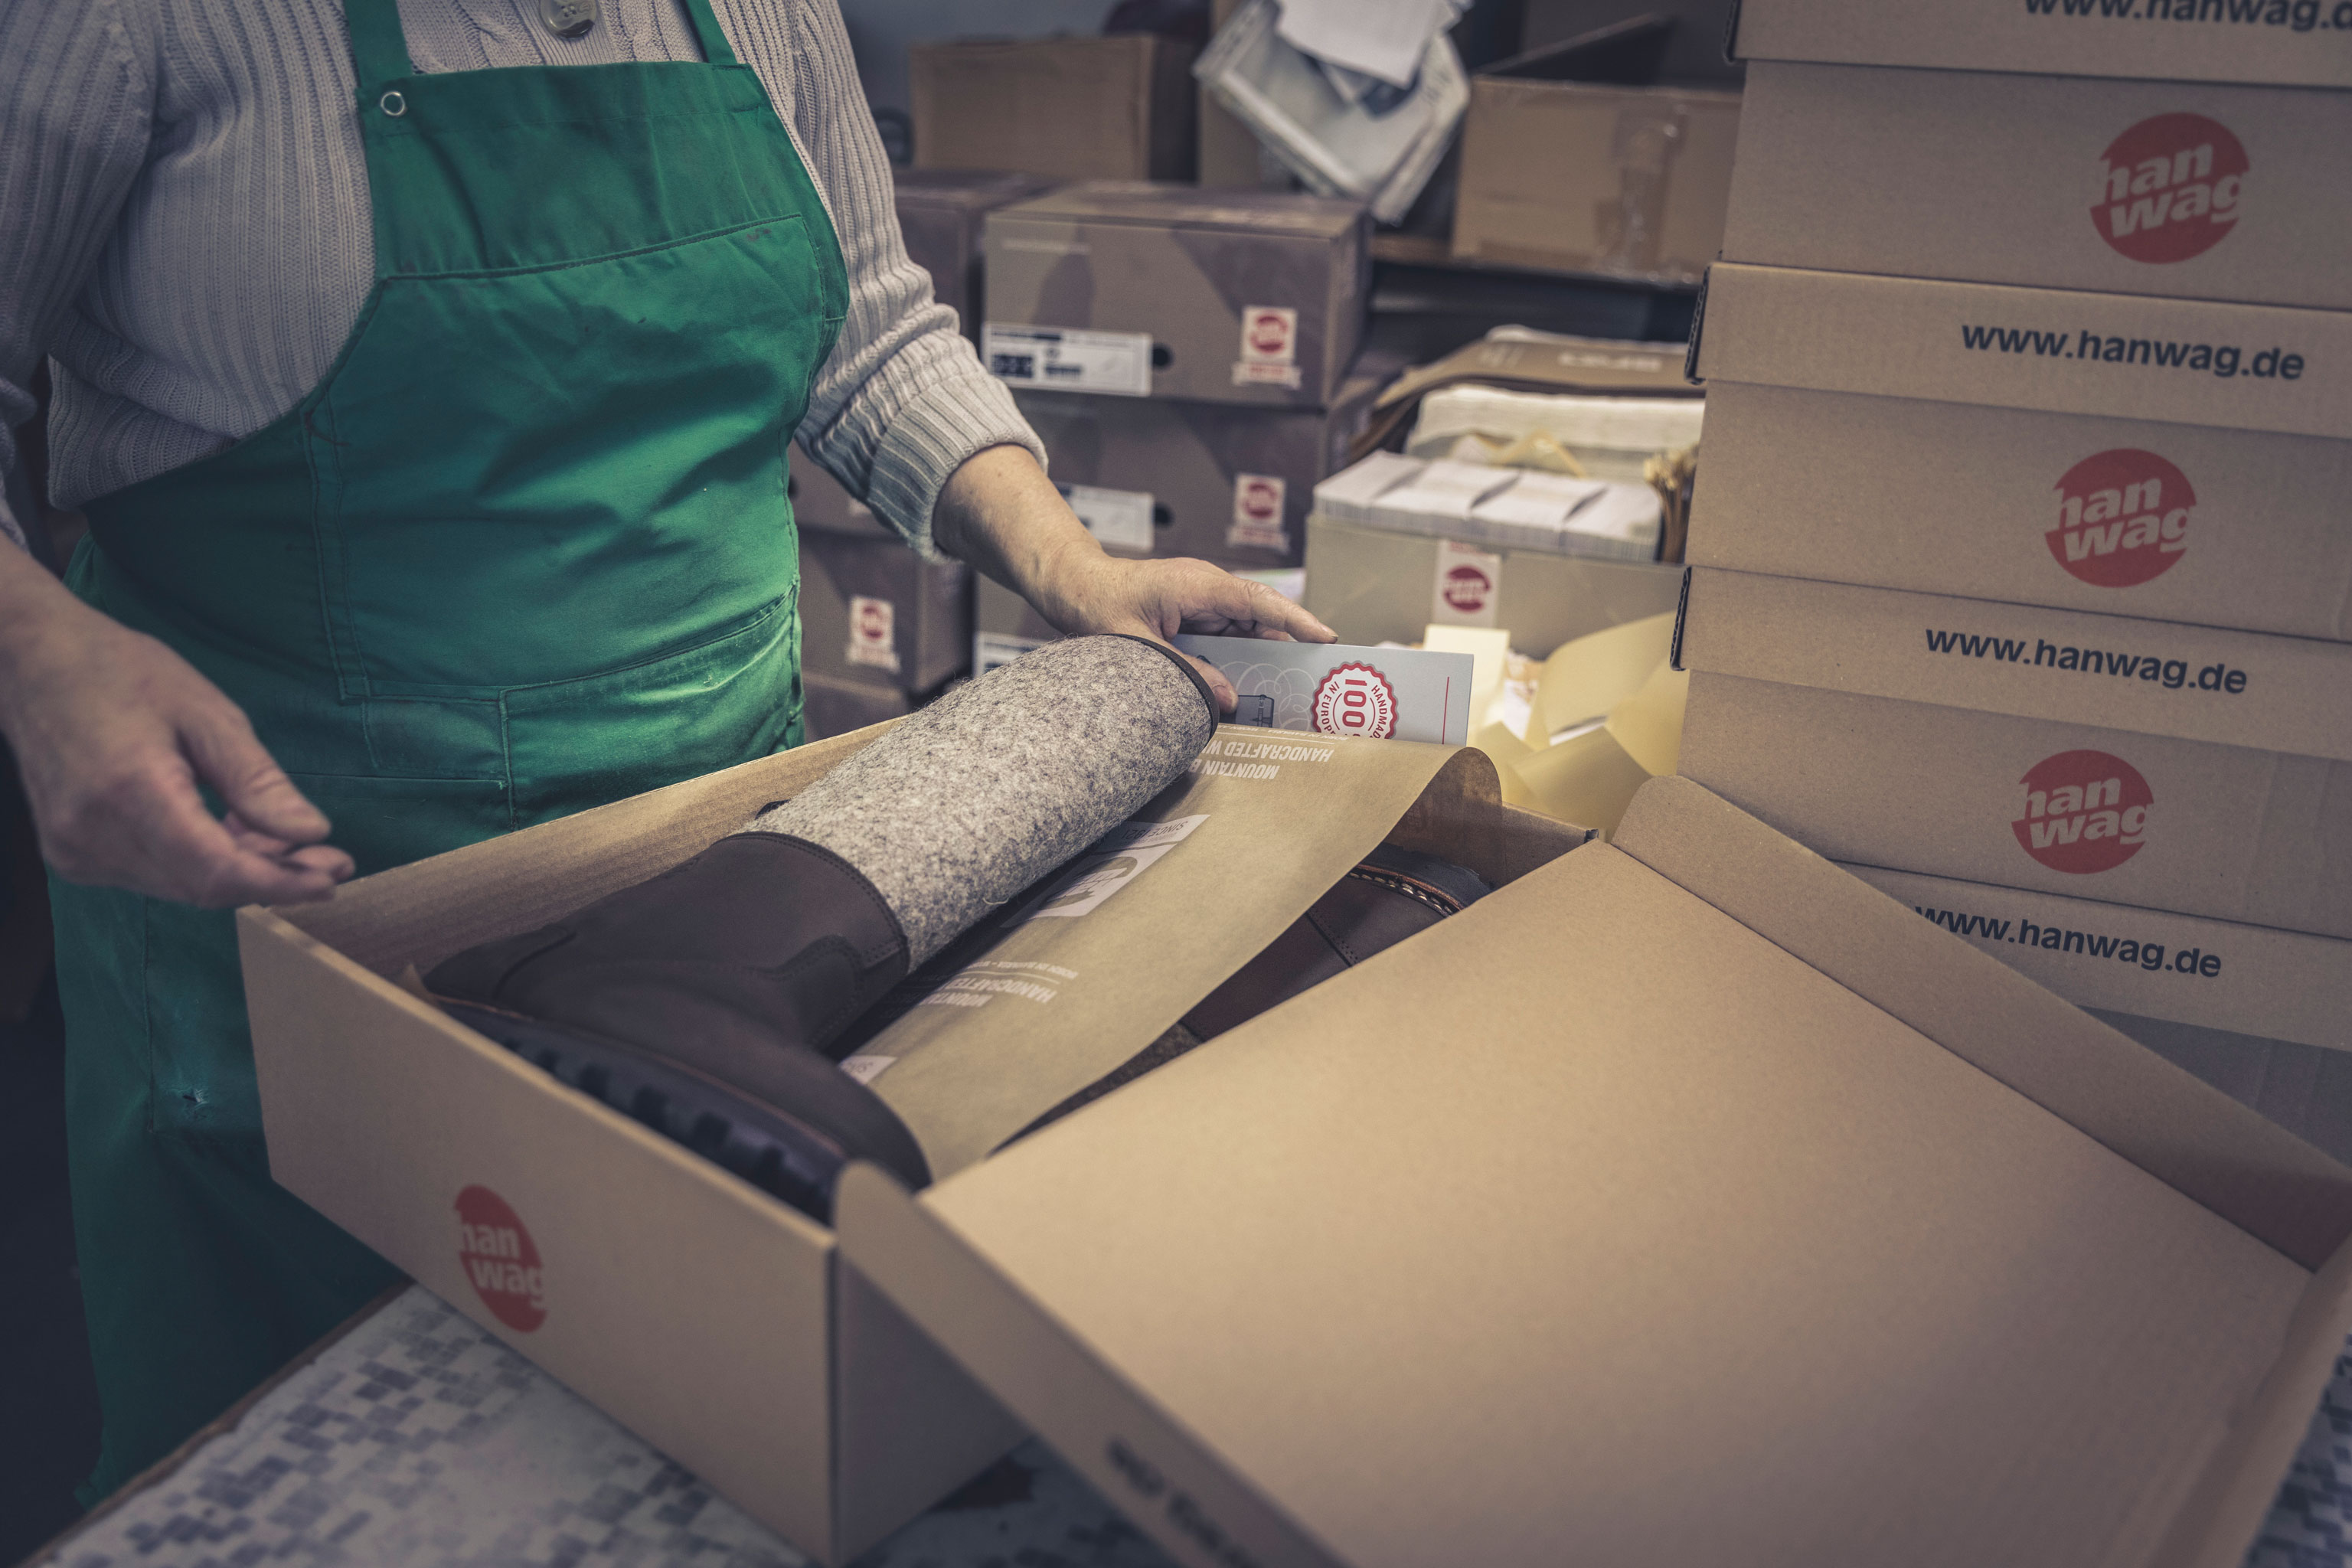 Mitarbeiterin verpackt Hanwag Räven in Kartons